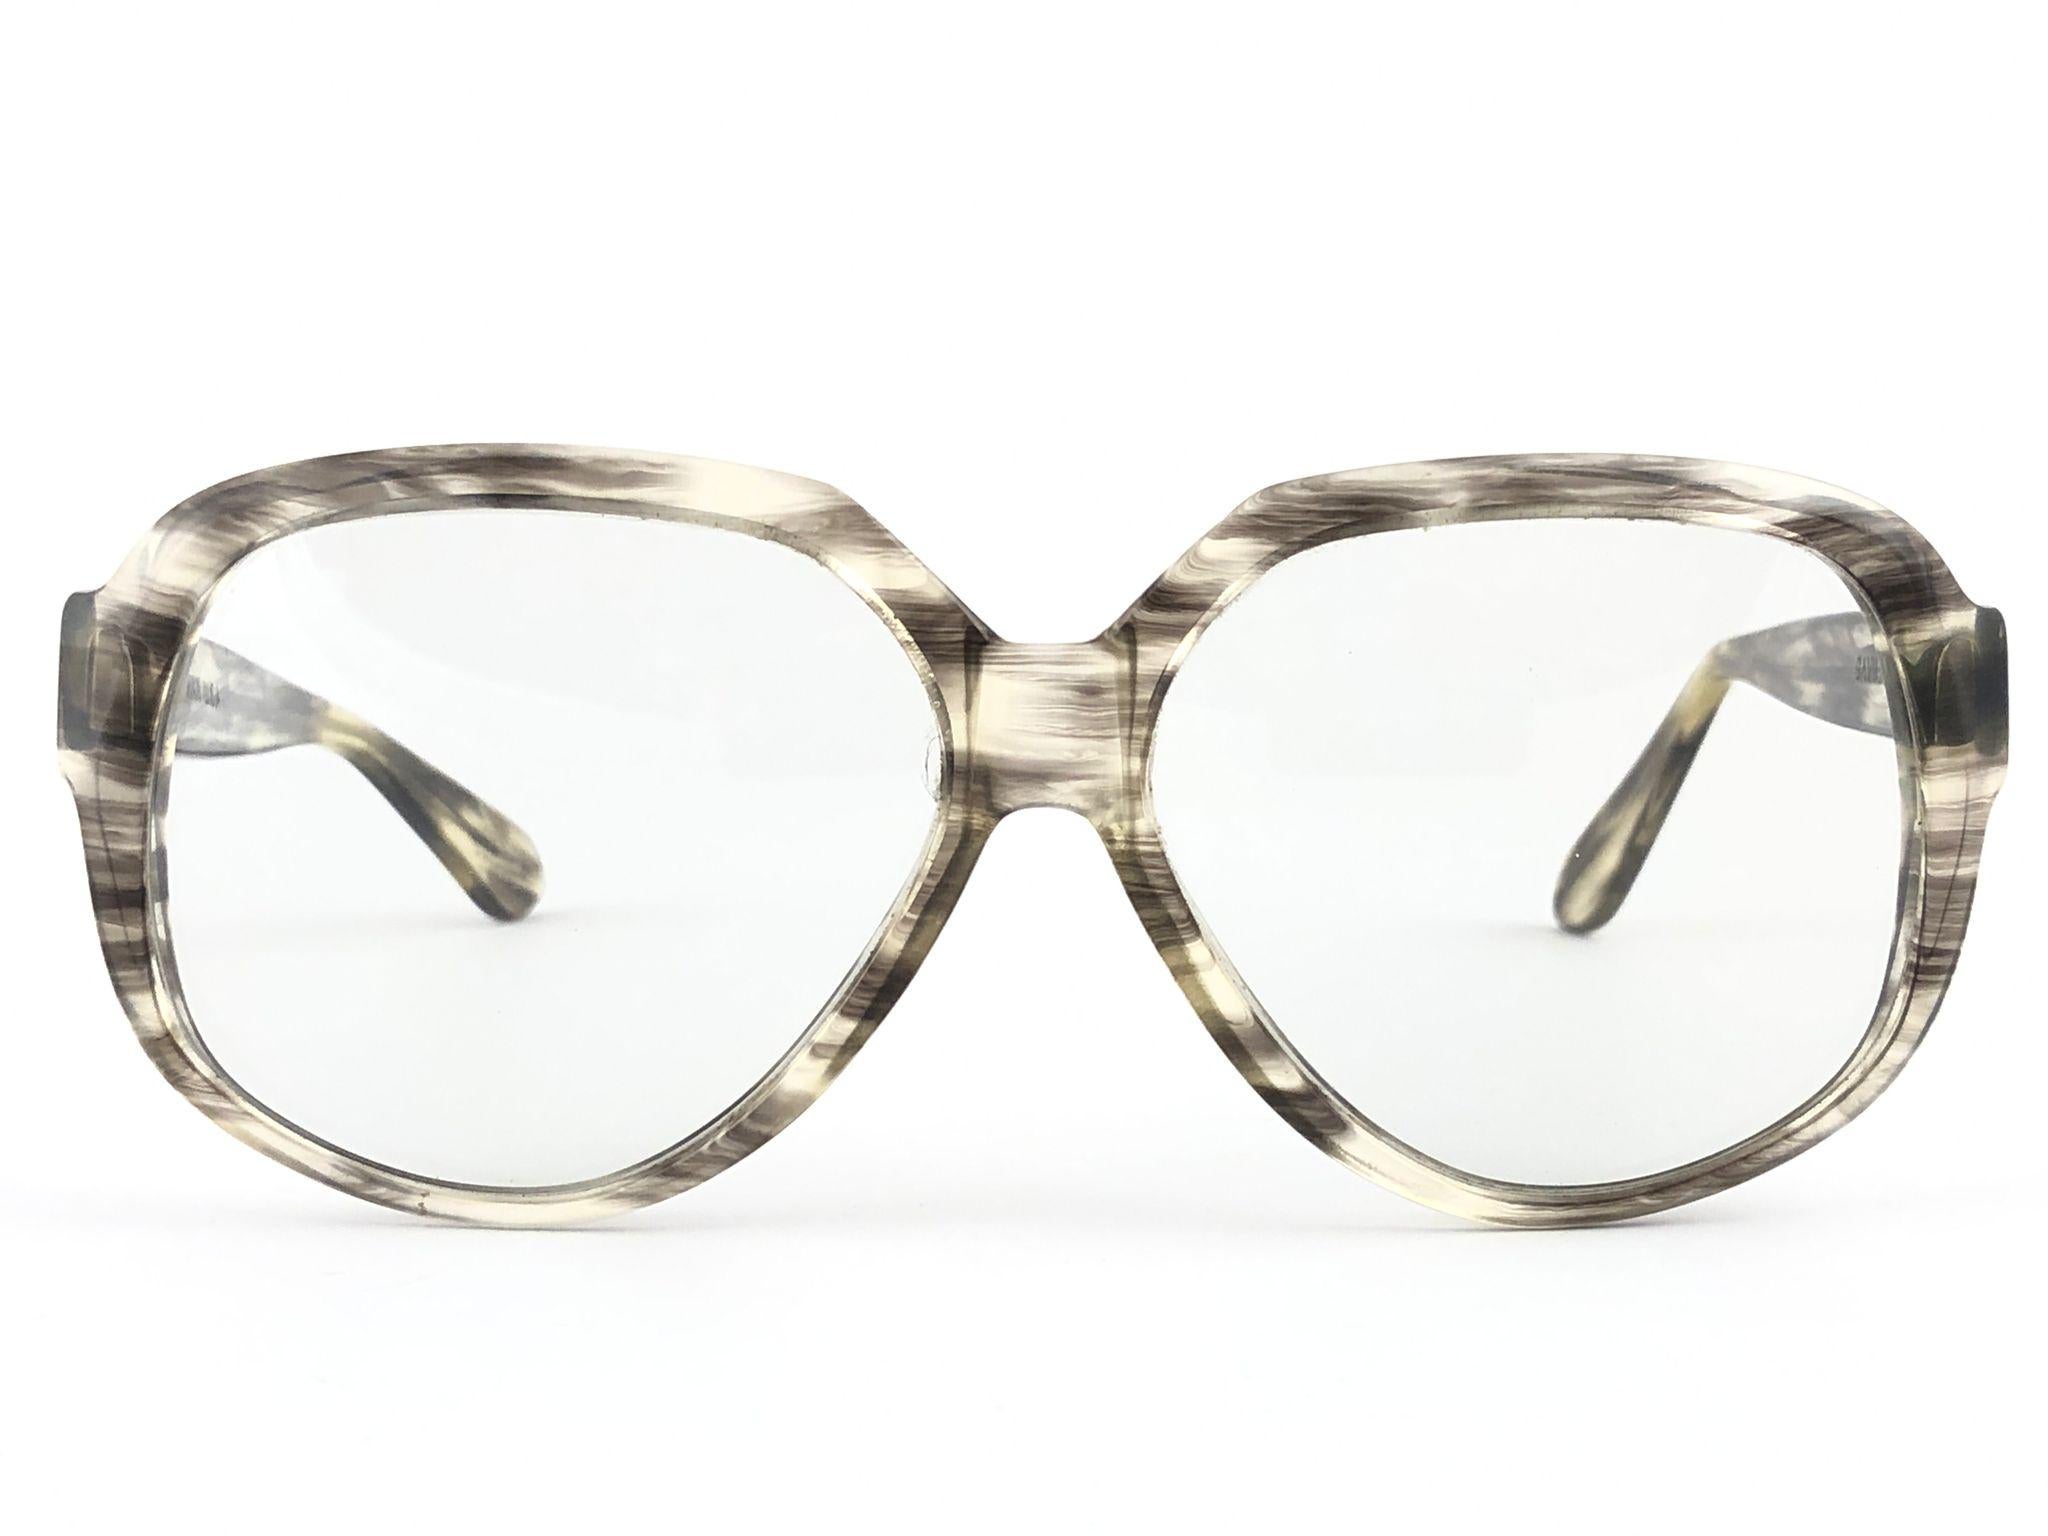 Rare lunettes de soleil vintage Gavilan oversized avec verres clairs.  

Cette paire peut présenter des signes mineurs d'usure dus à près de 40 ans de stockage. 

Conçu et produit aux États-Unis.

AVANT : 14 CMS

HAUTEUR DE LA LENTILLE : 5